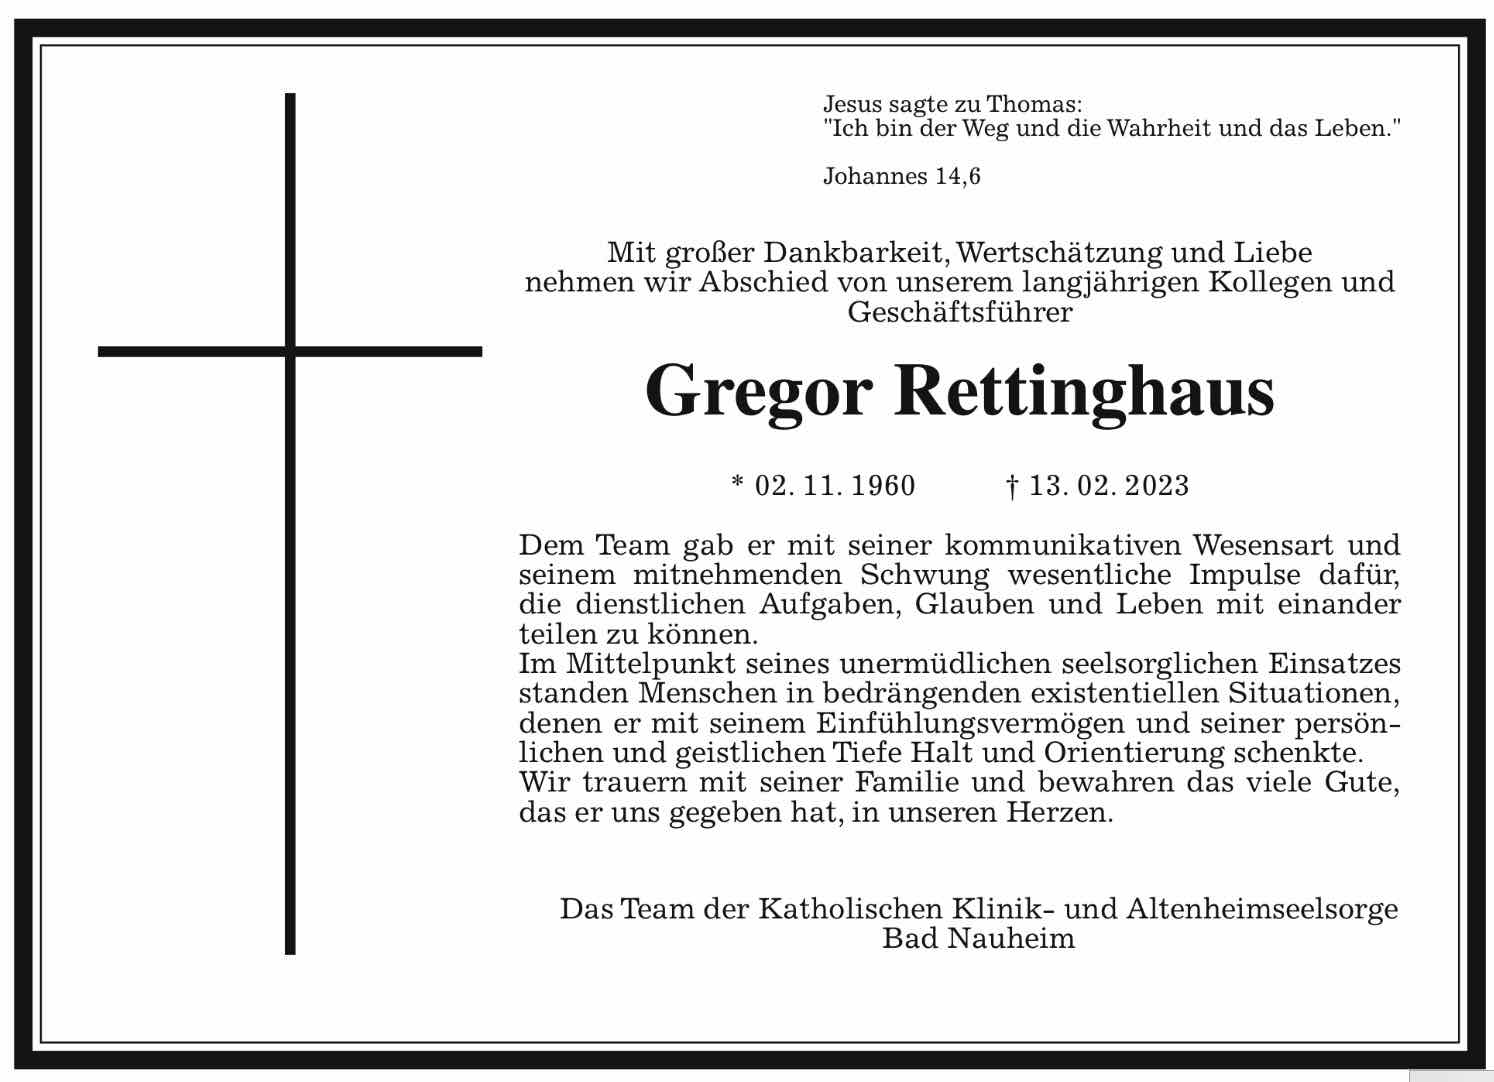 Auch seine Mitarbeiter würdigen Gregor Rettinghaus (c) khs